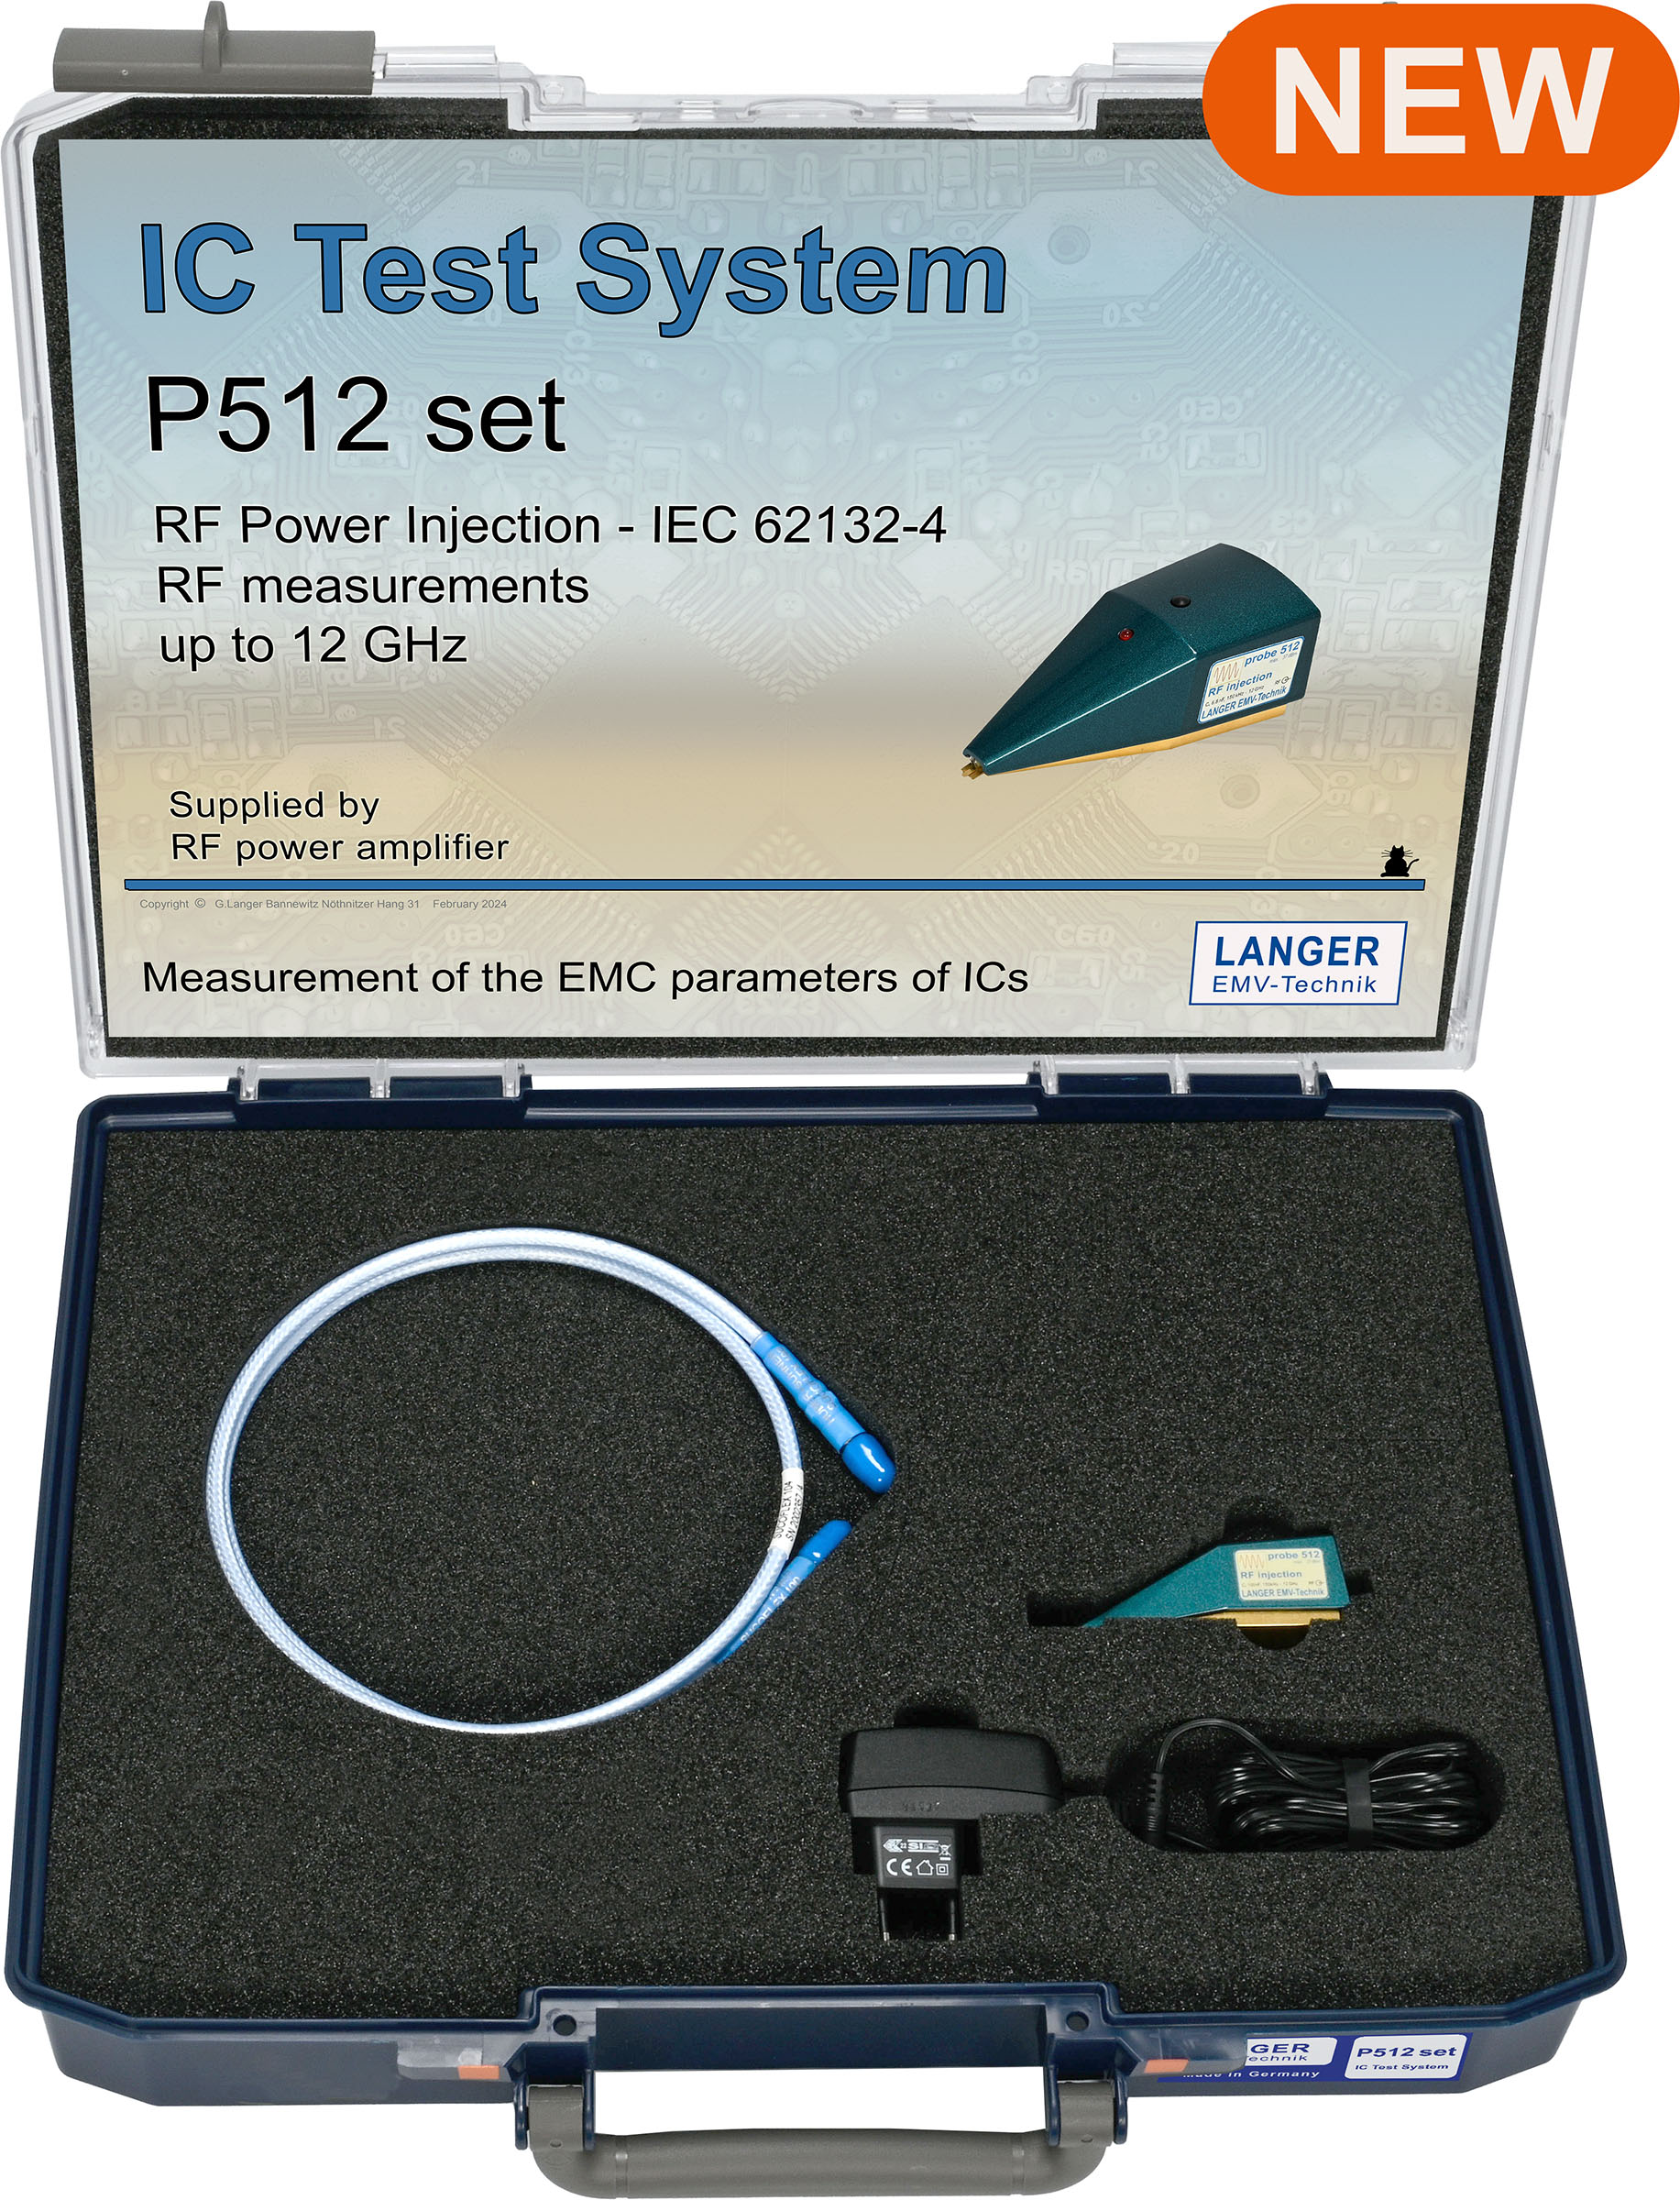 P512 set, HF-Power Einkopplung und Messungen IEC 62132-4 bis 12 GHz